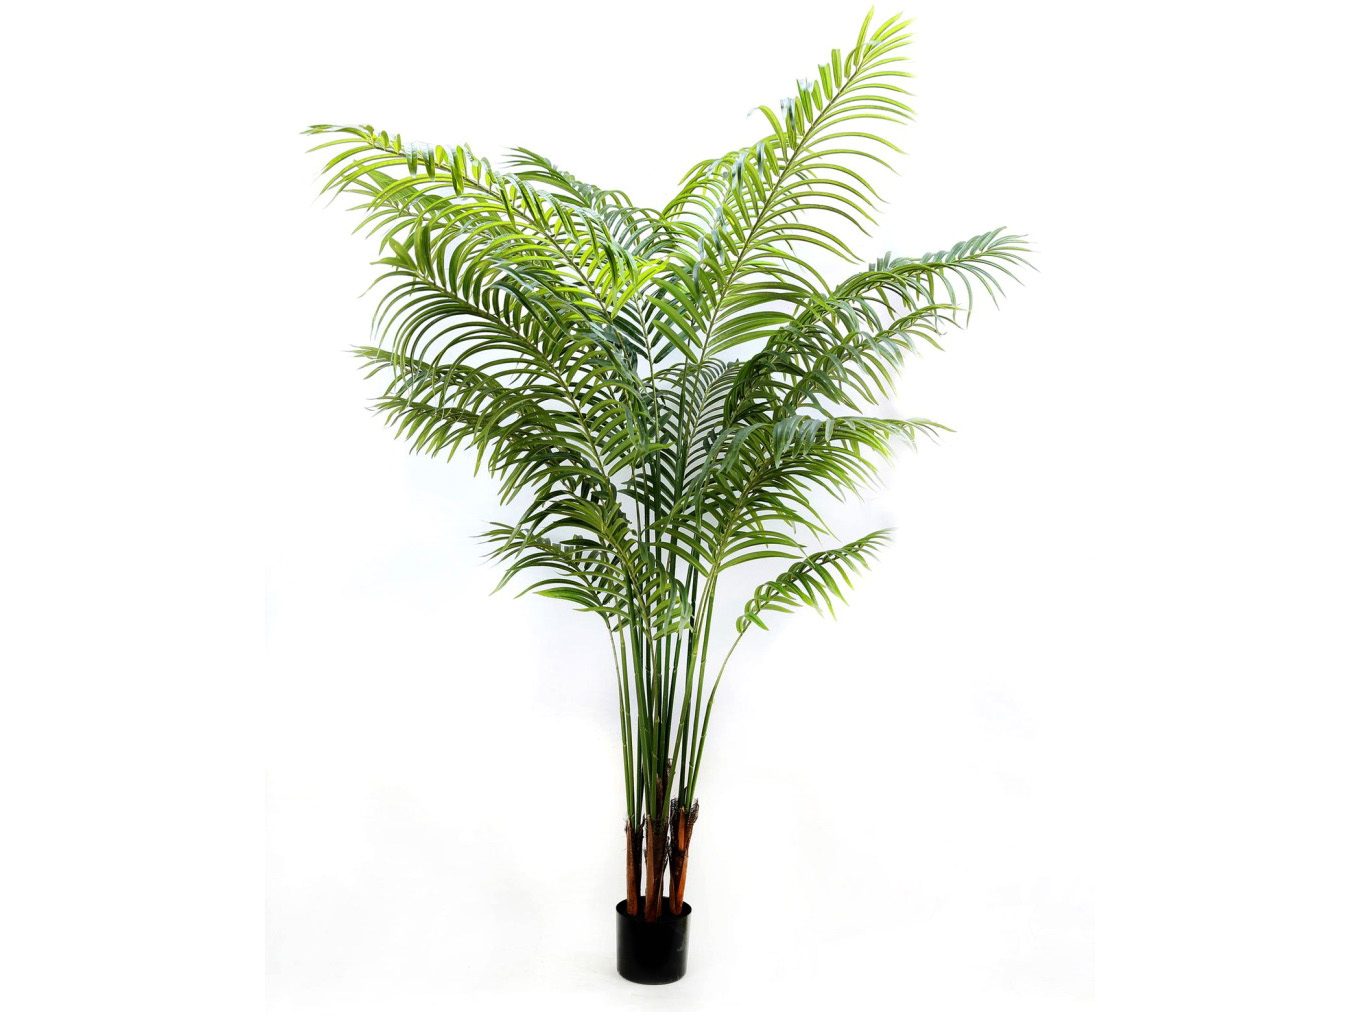 Искусственное растение Palm Areca Tree 200 cm.